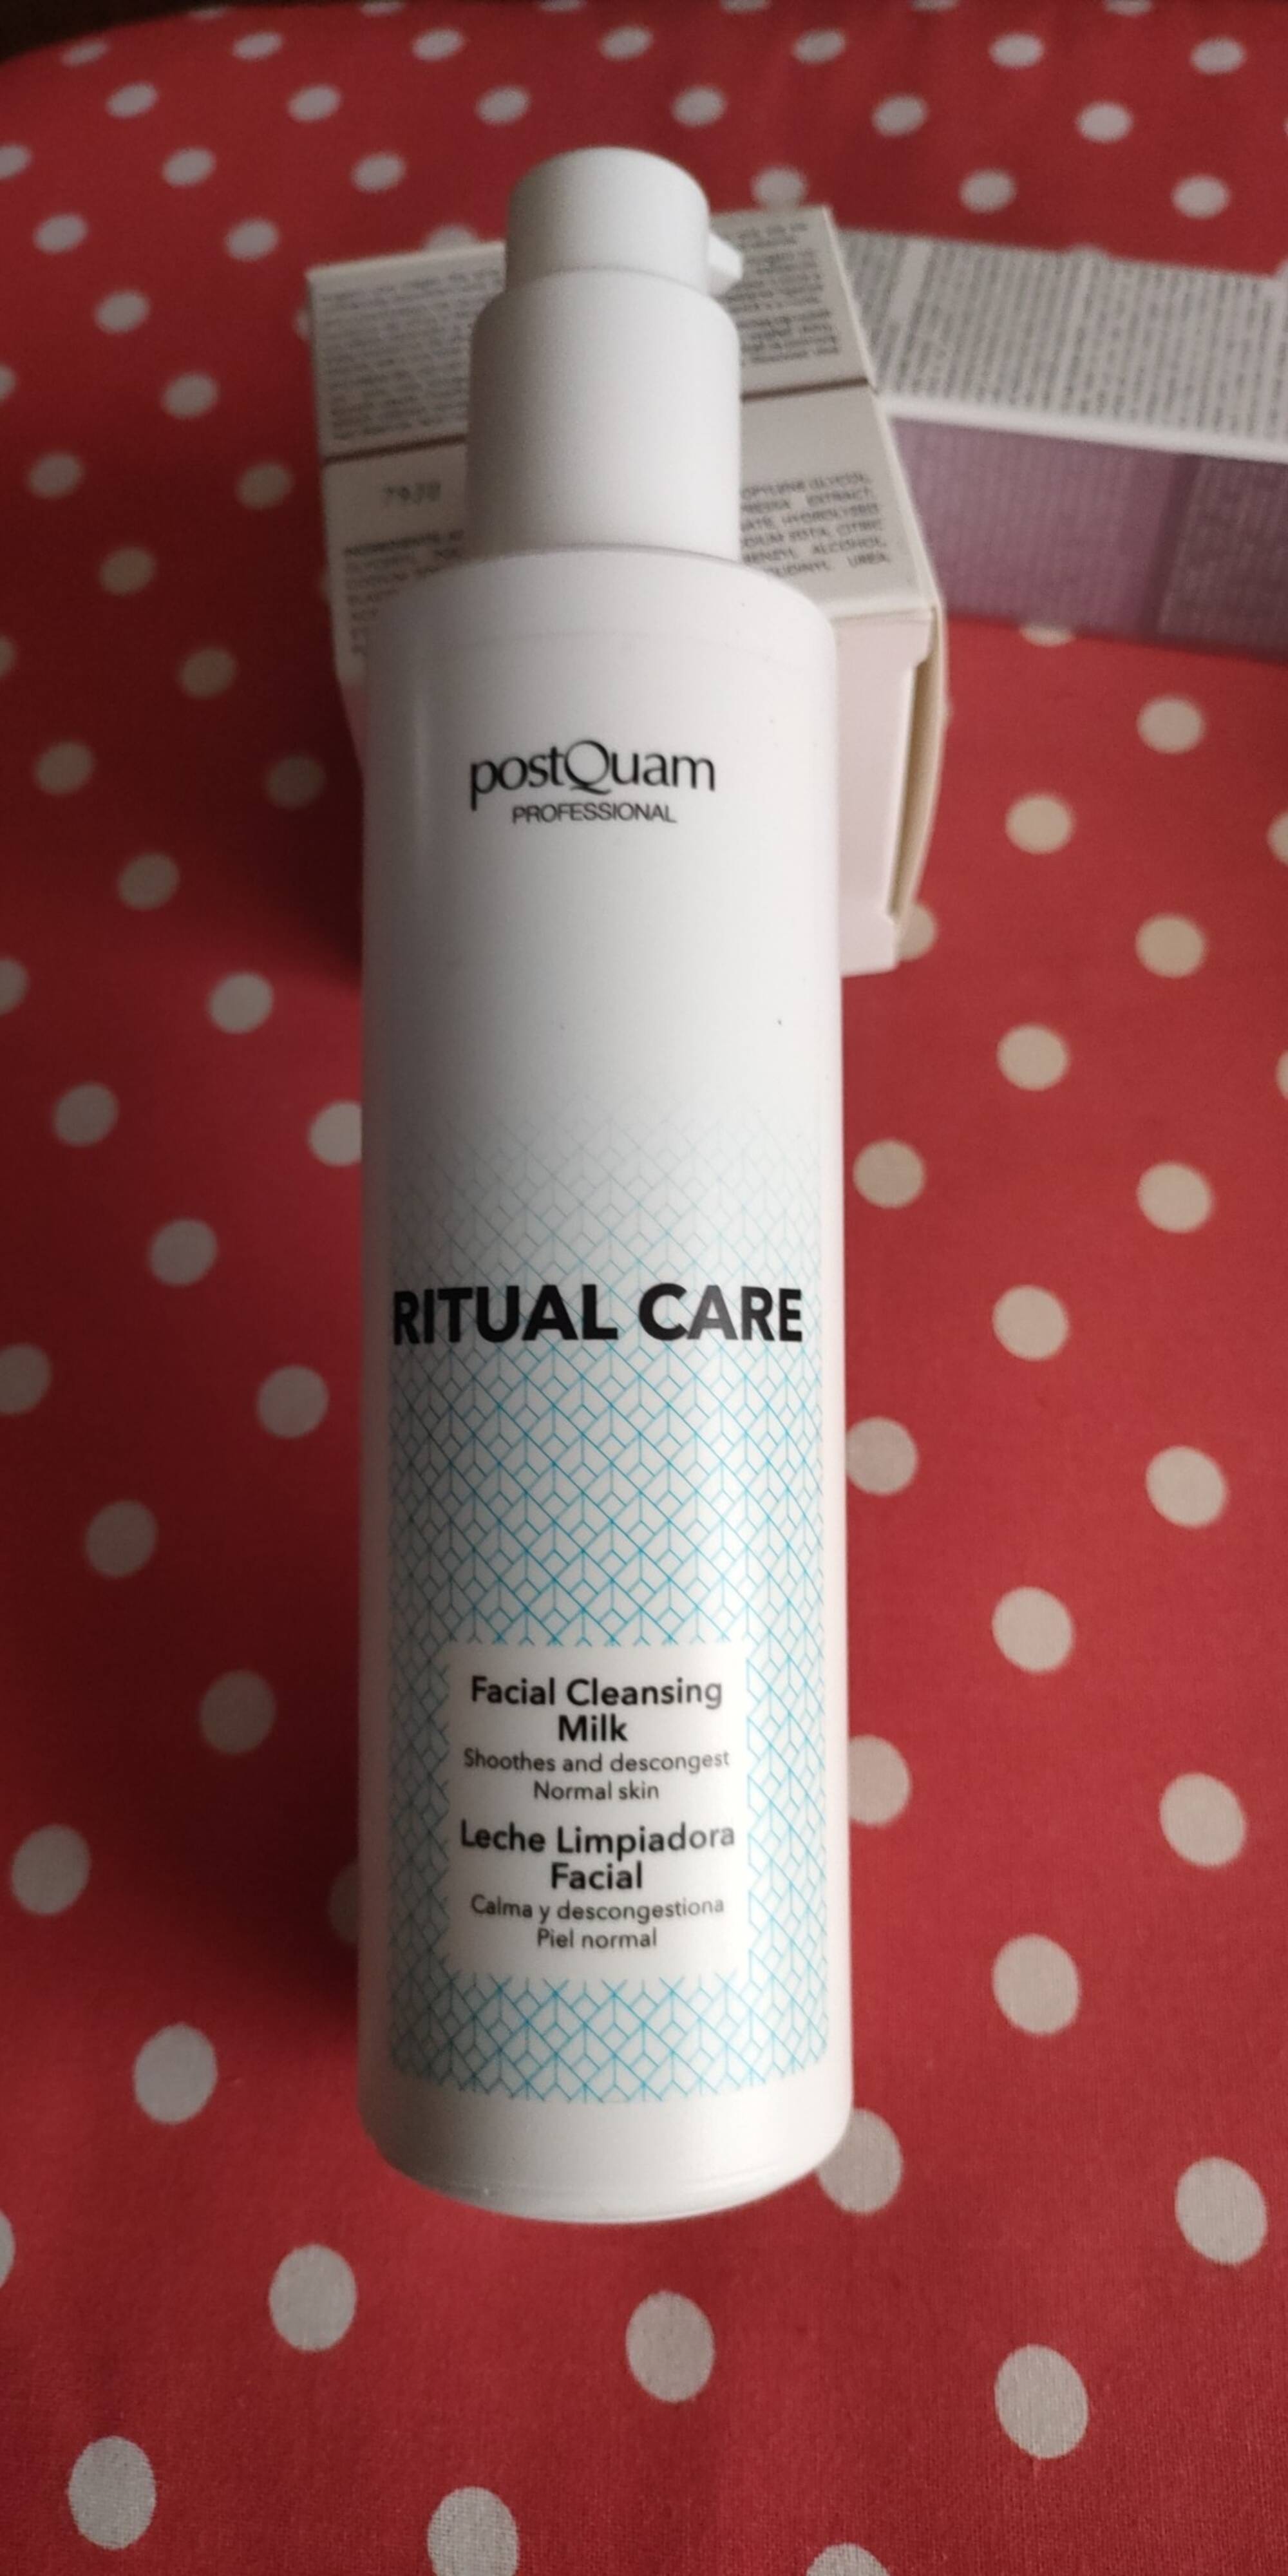 POSTQUAM - Ritual care - Facial cleansing milk